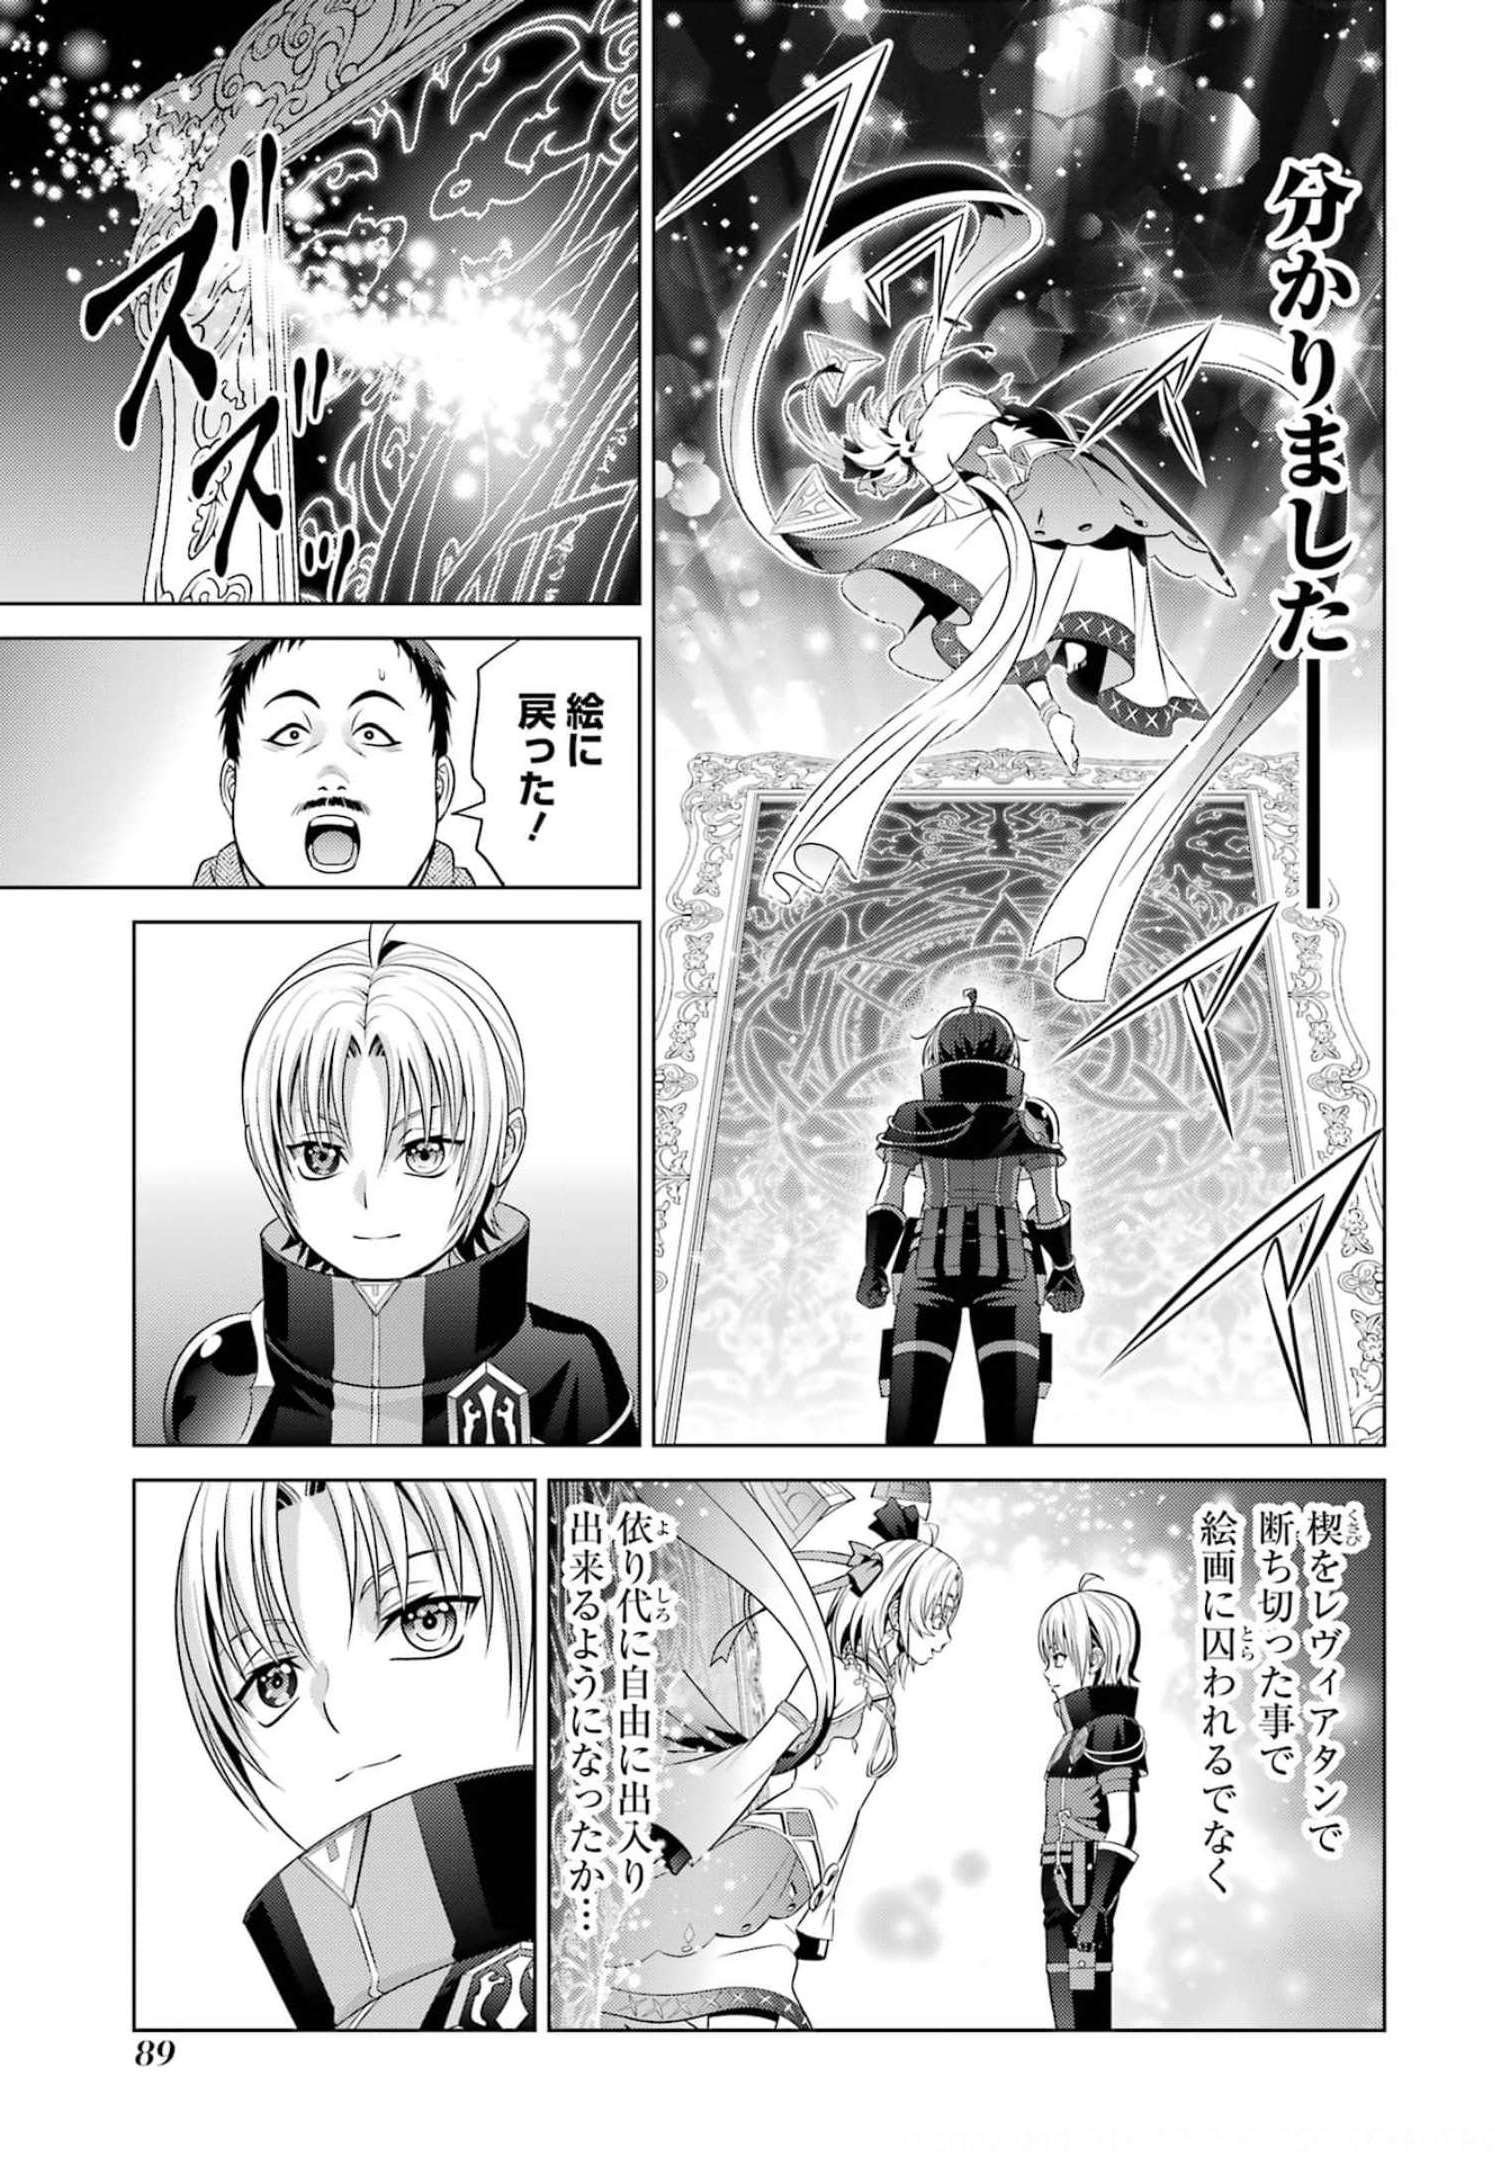 Kizoku Tensei: Megumareta Umare kara Saikyou no Chikara wo Eru - Chapter 15 - Page 43